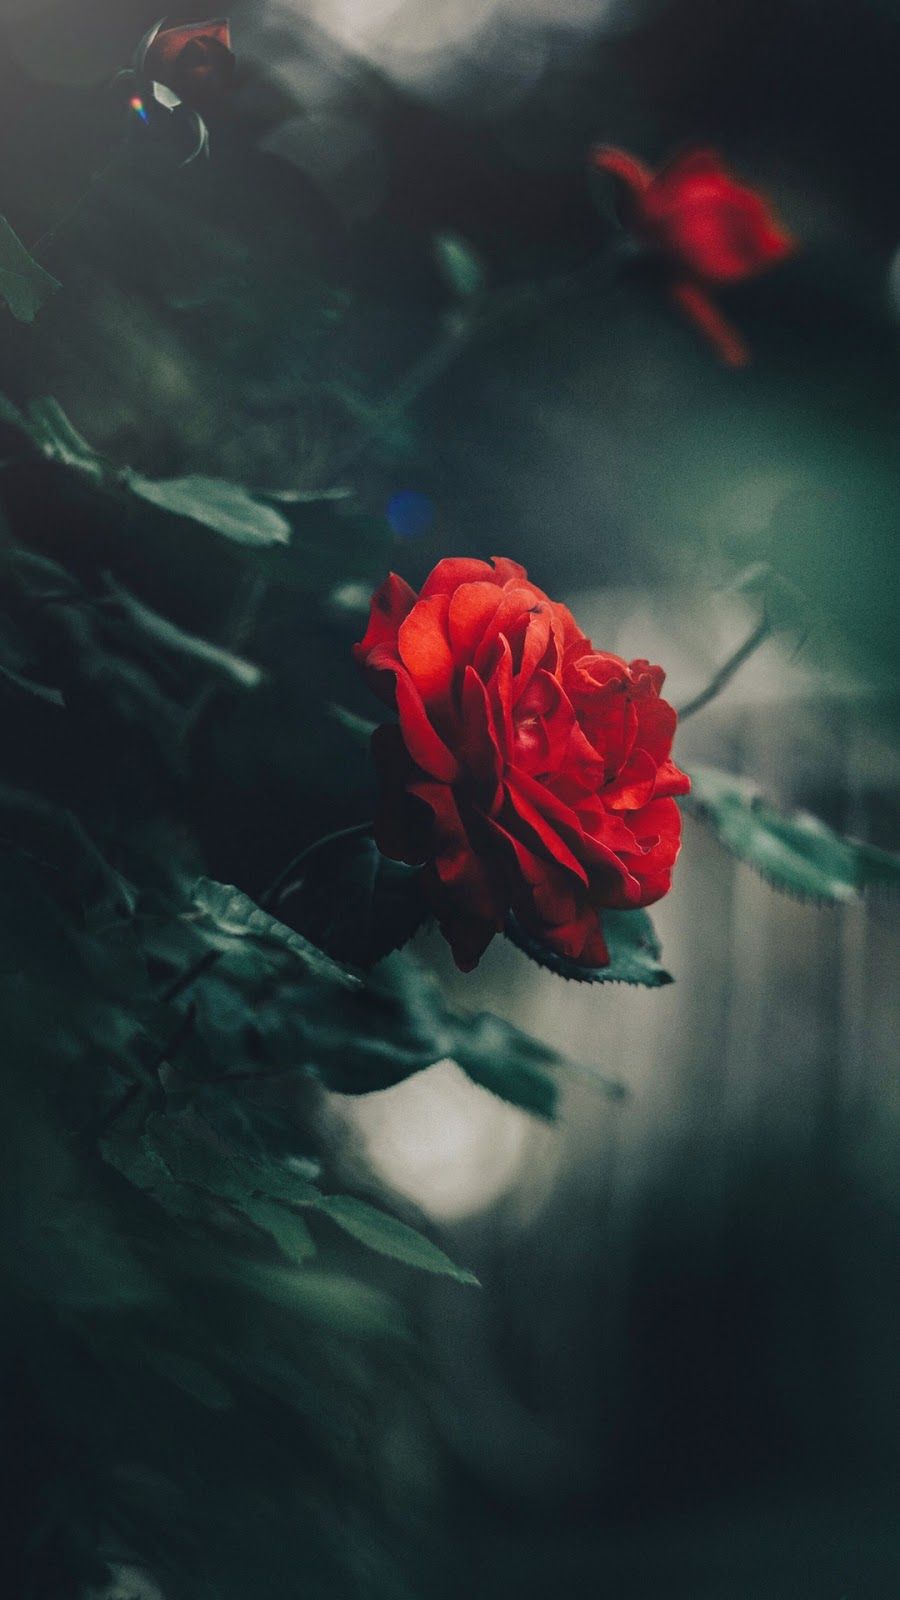 wallpaper for android tumblr,red,petal,flower,rose,garden roses